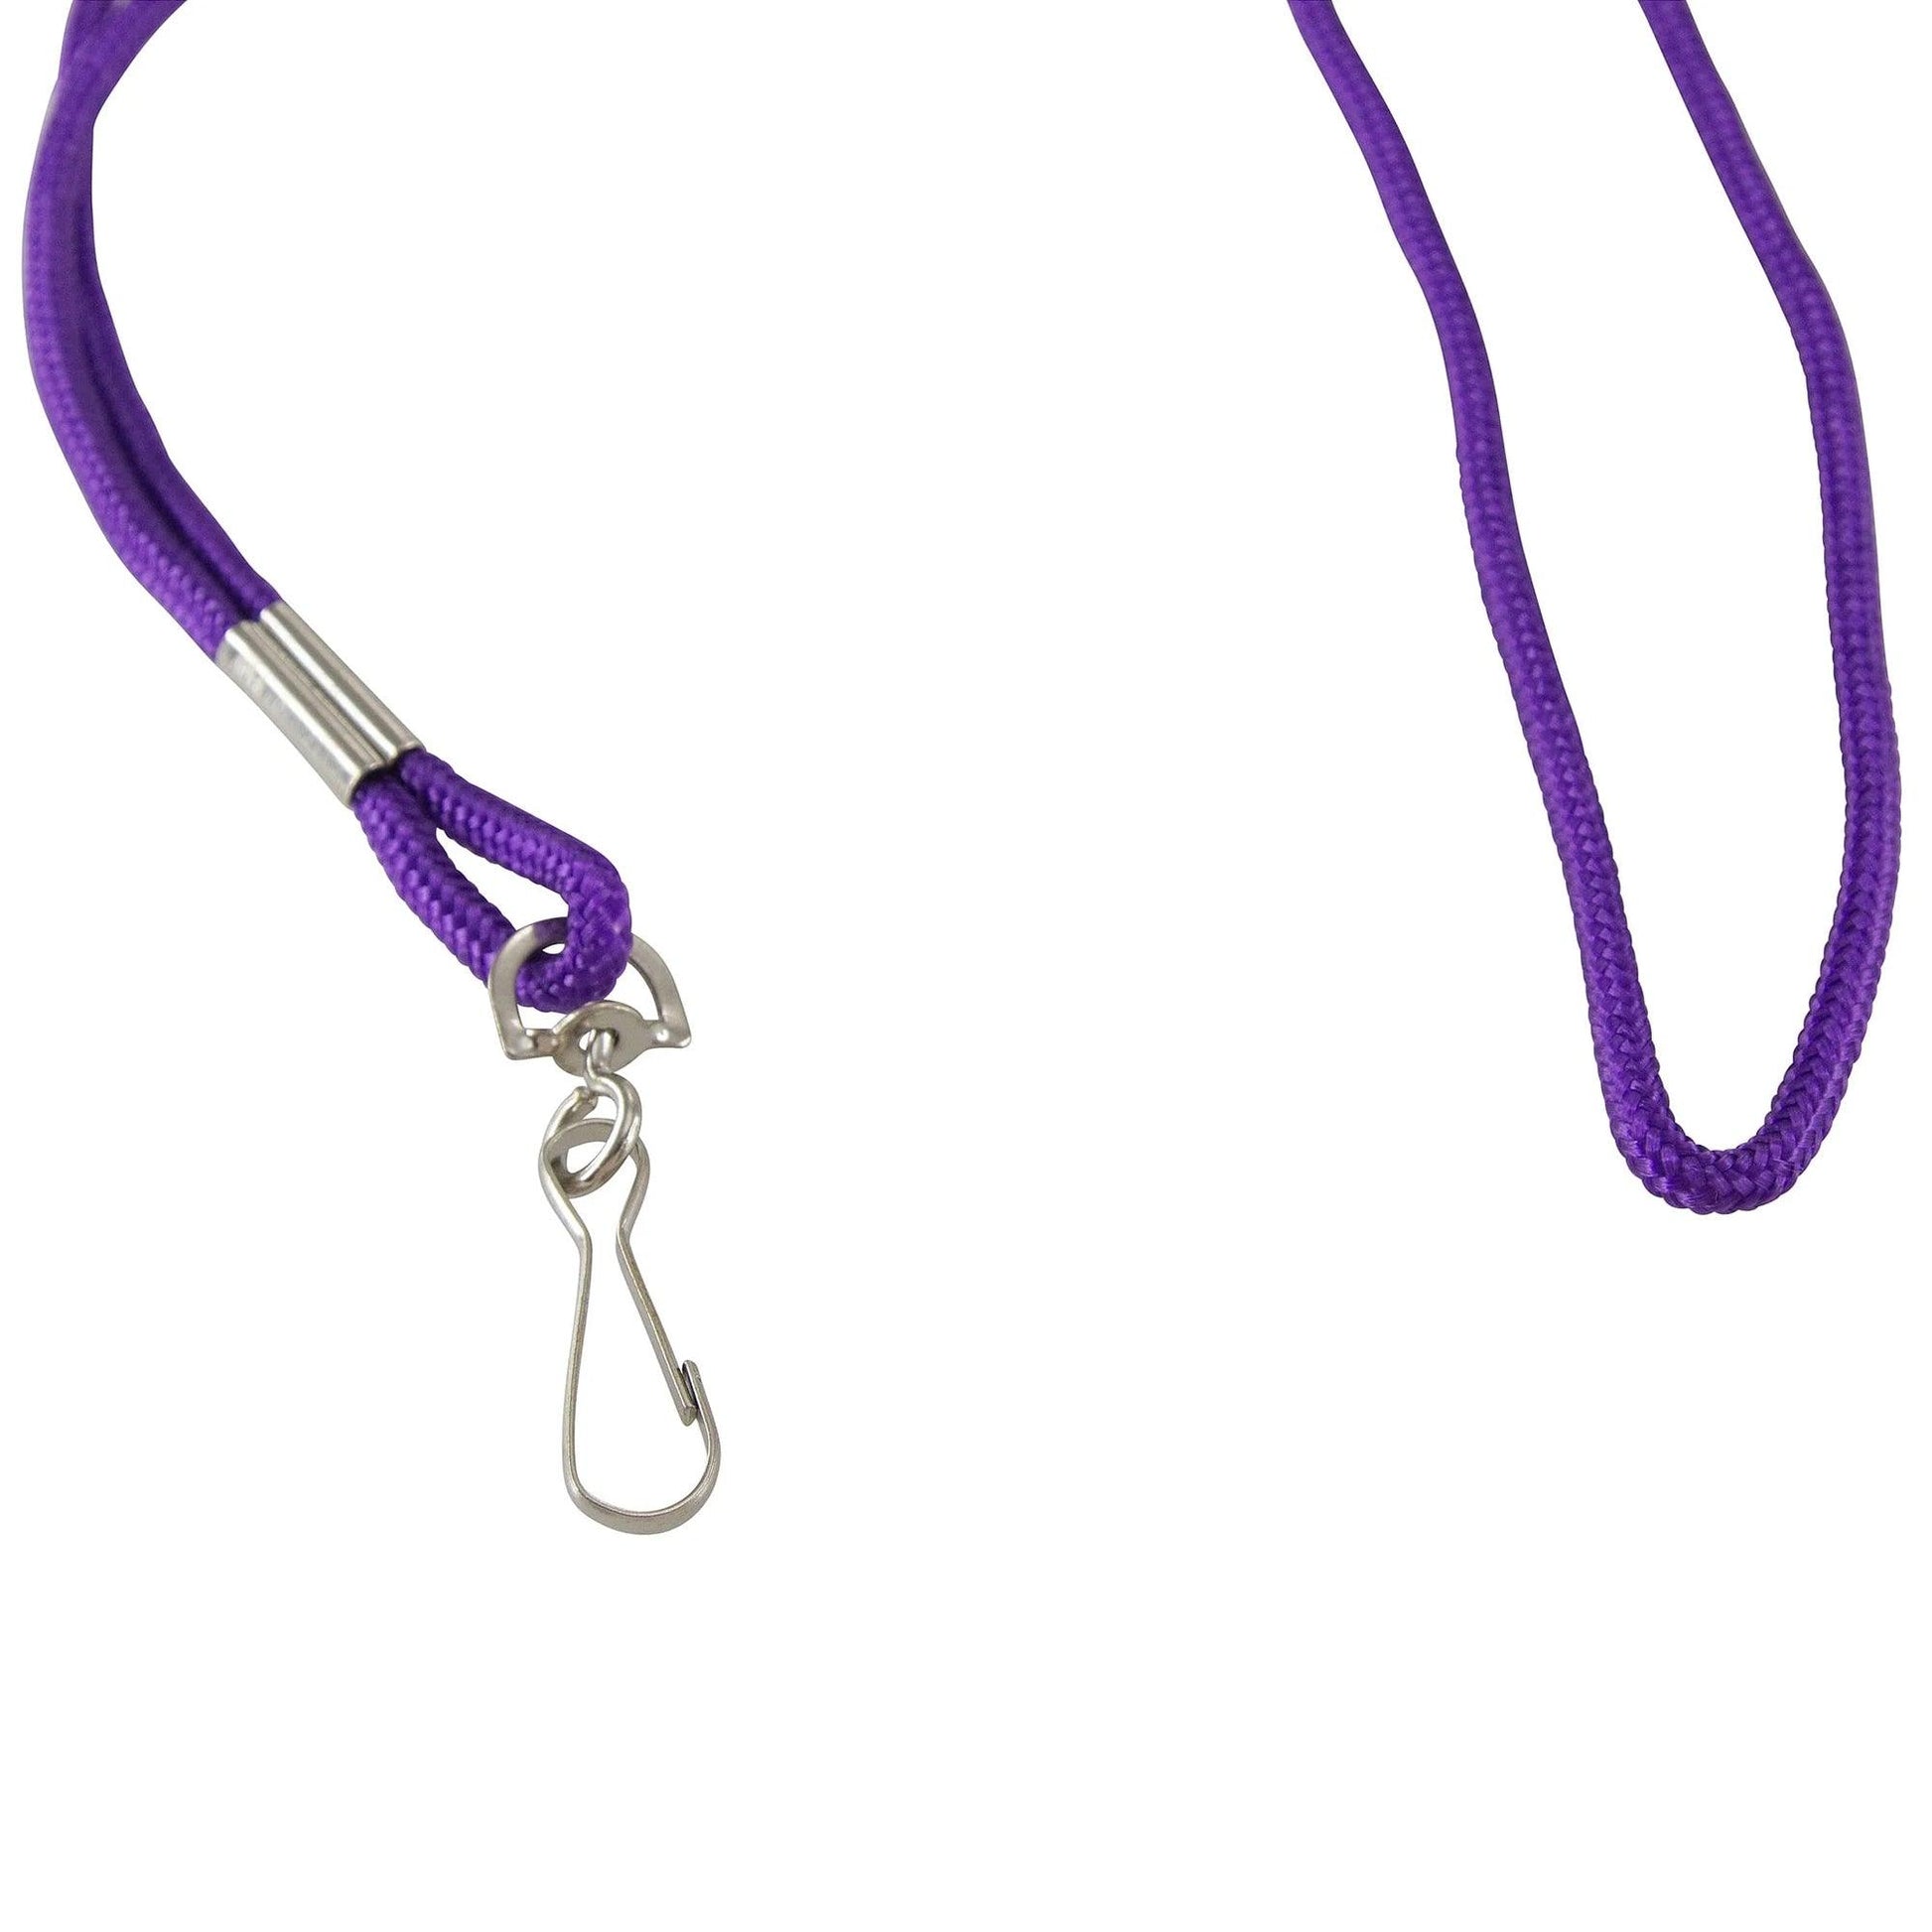 Standard Lanyard Hook Rope Style, Purple, Pack of 24 - Loomini